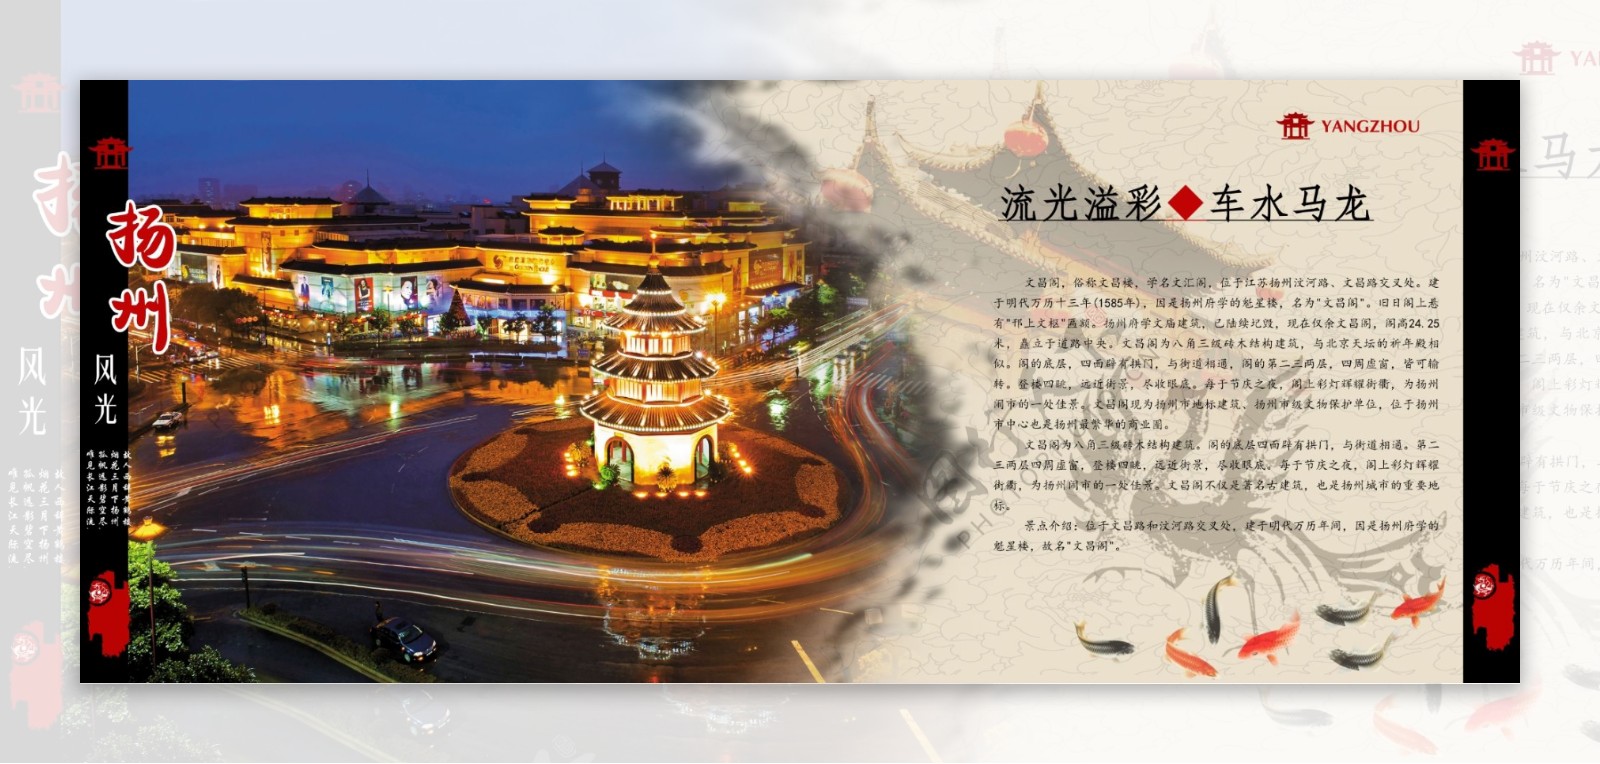 扬州风景画册图片